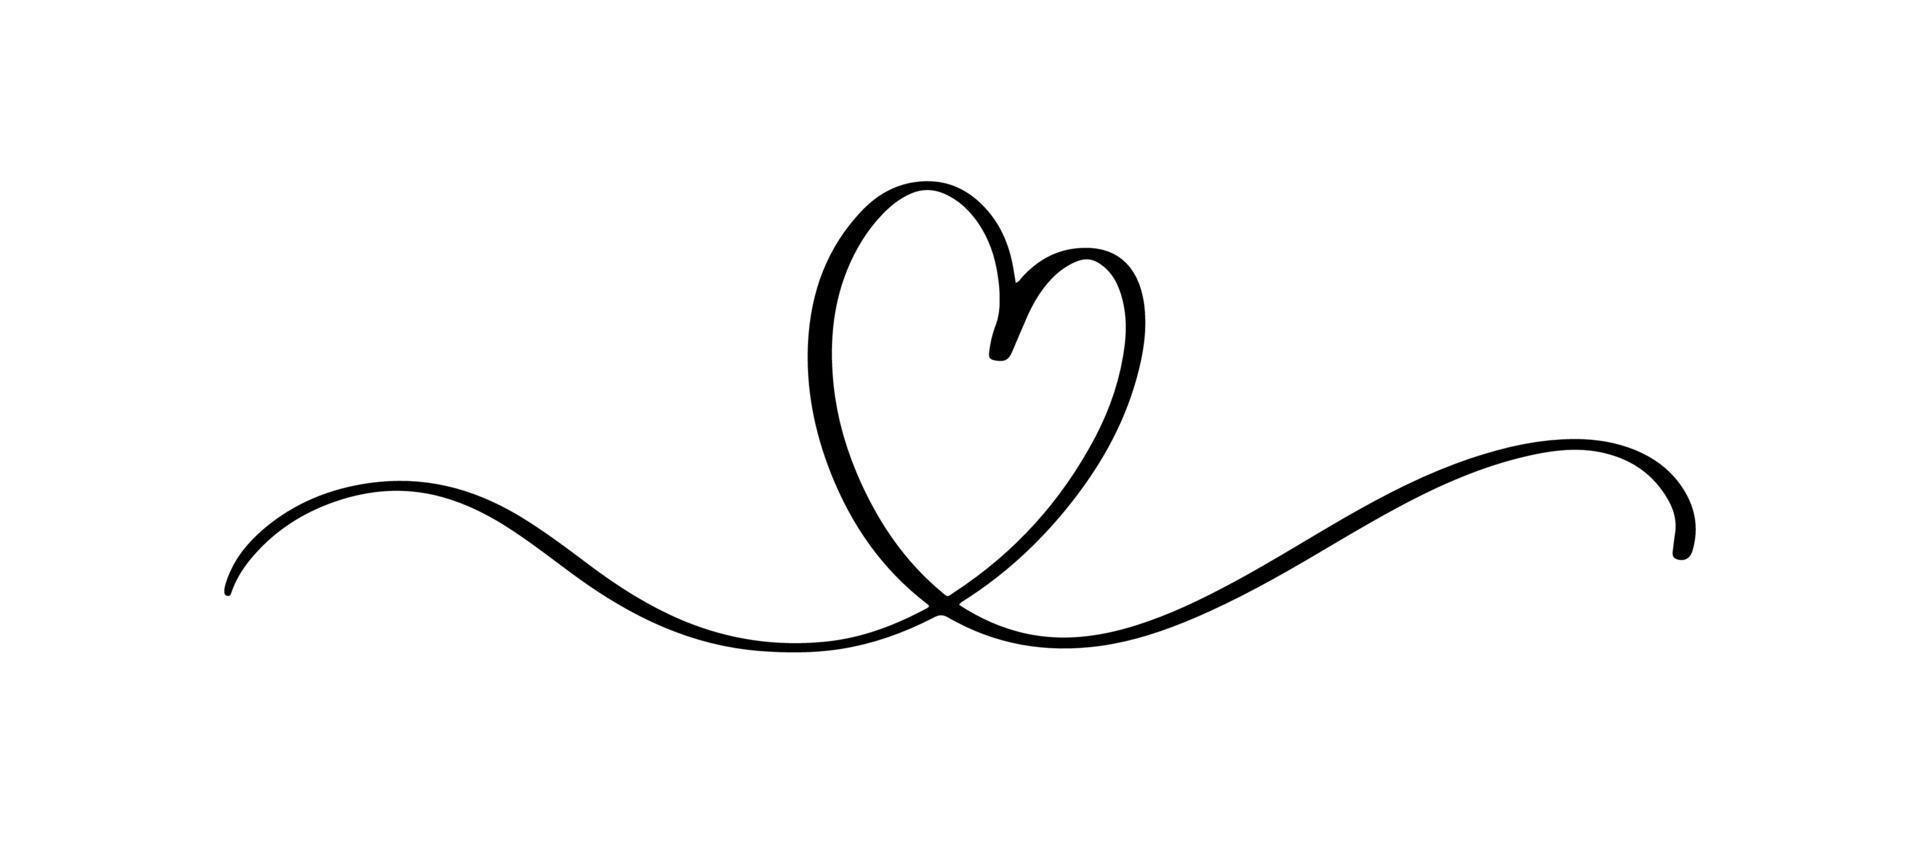 Herz- und Liebesstrudelteiler. hand gezeichnete skizze im gekritzelstil. durchgehende Linie Scribble Herz Thread Vektor Illustration. liebes- und hochzeitskonzept.